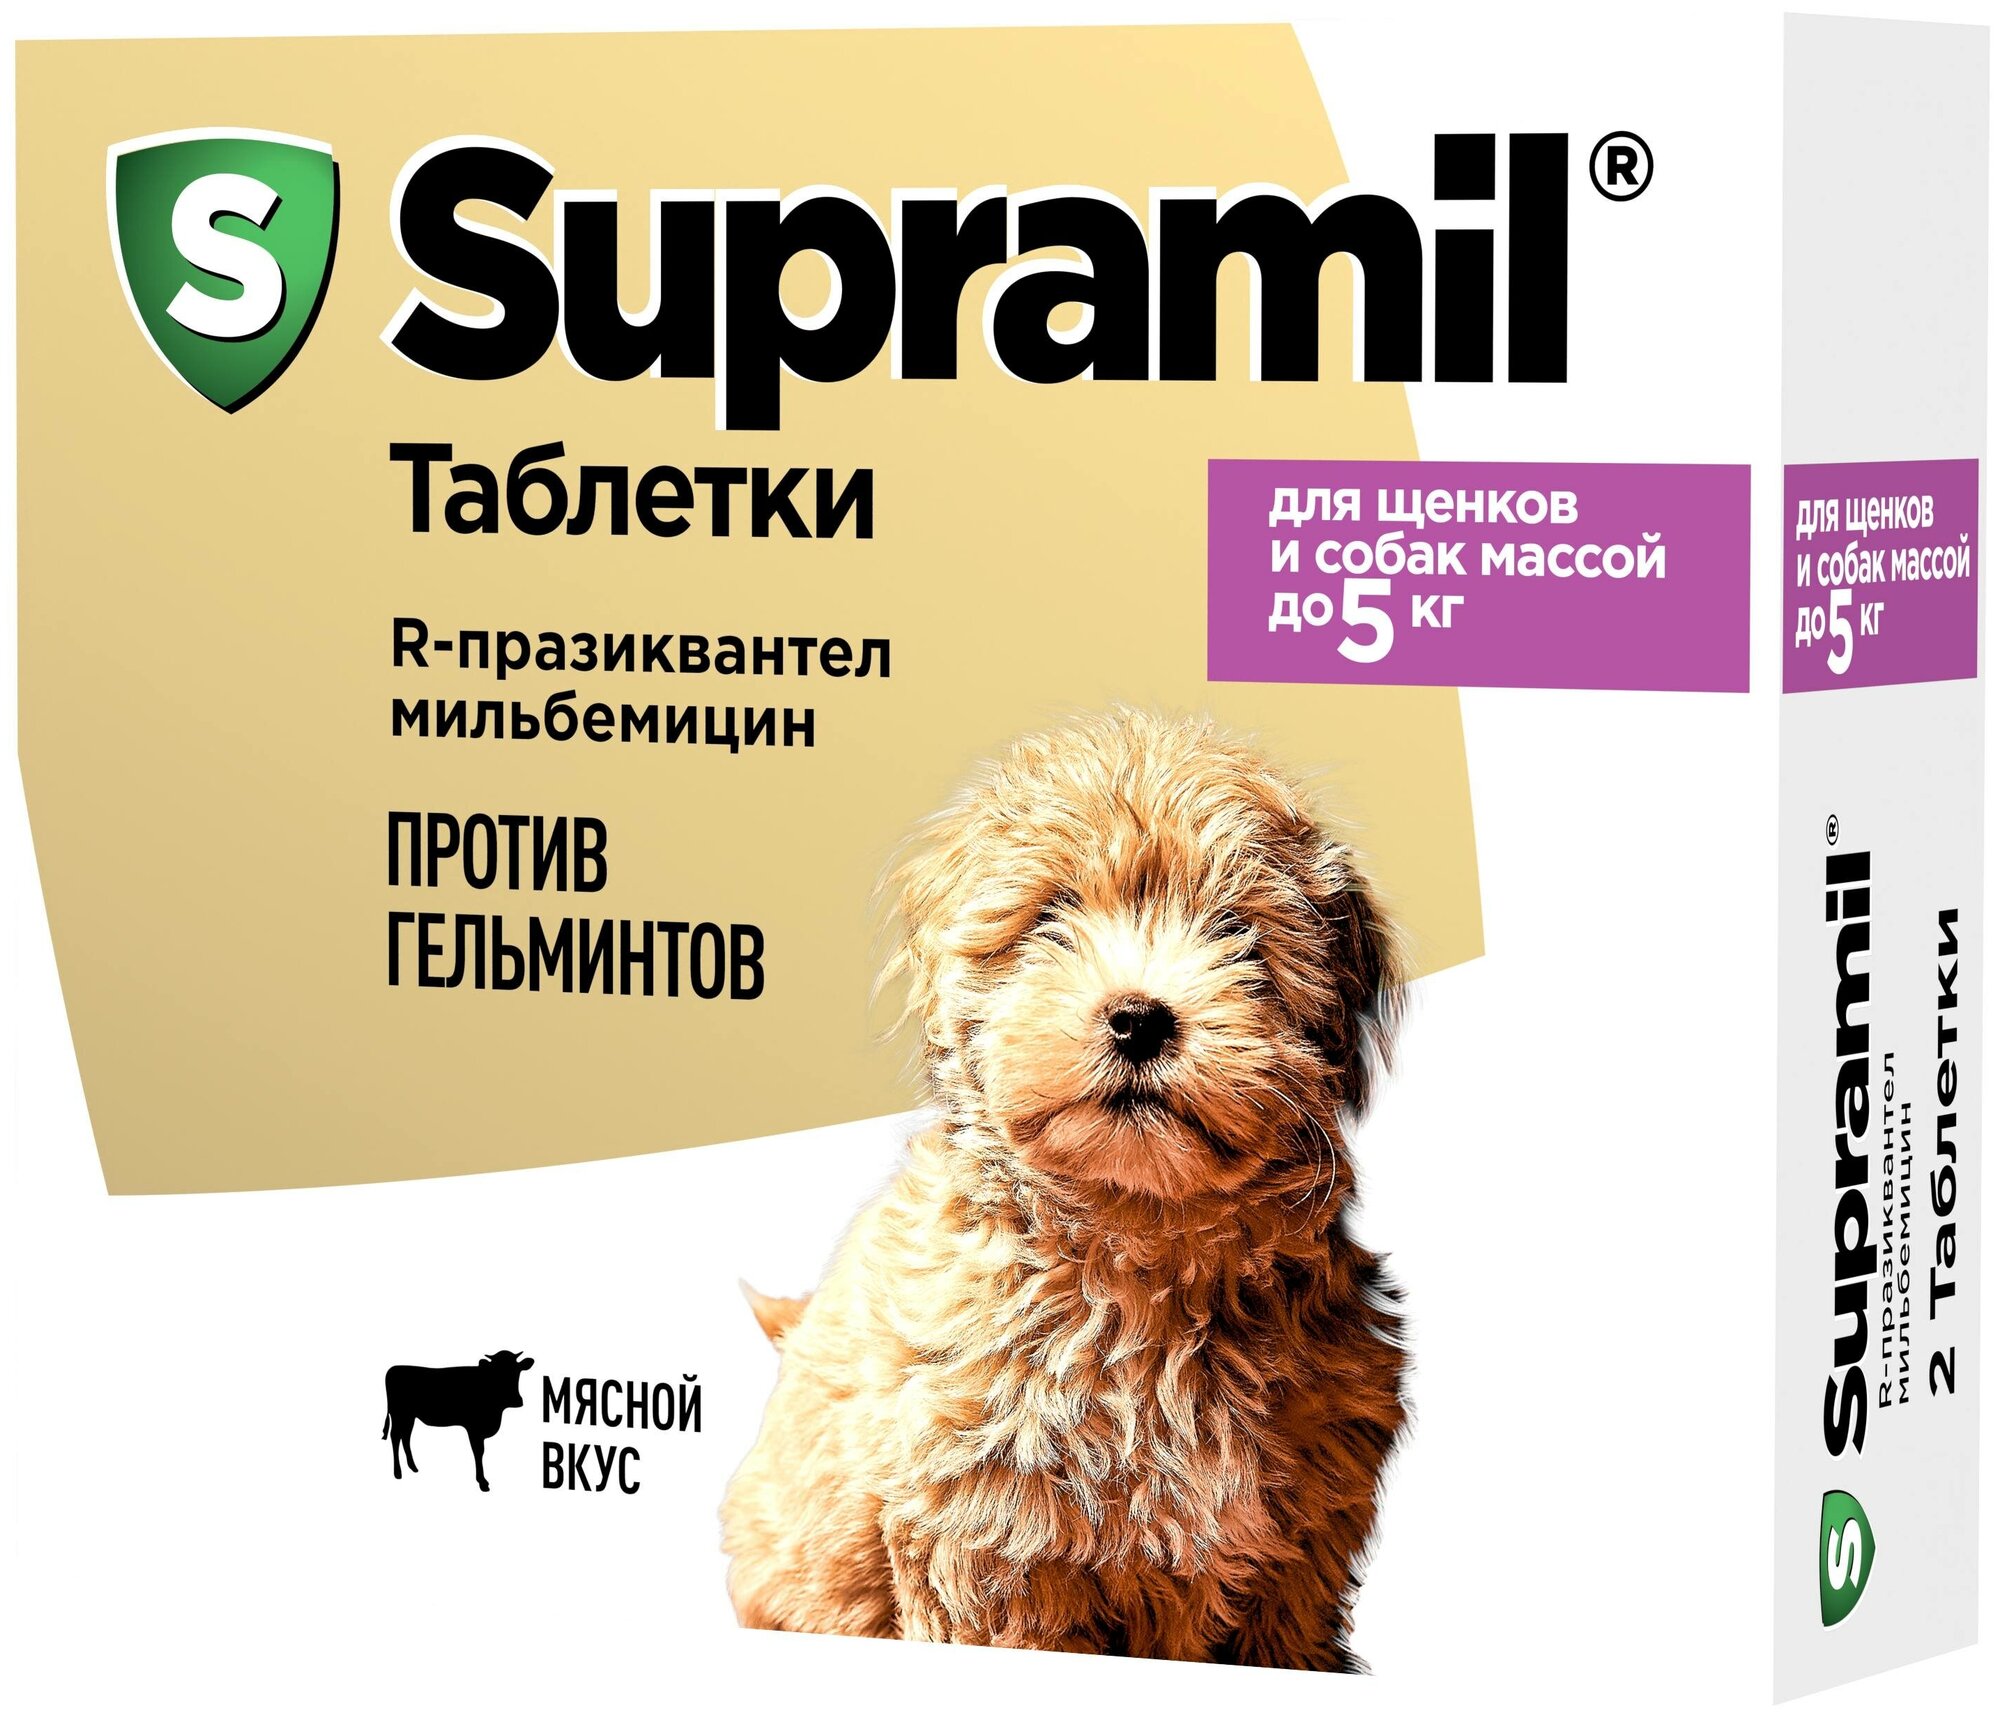 Супрамил препарат против гельминтов для собак массой до 5 кг 2 таблетки